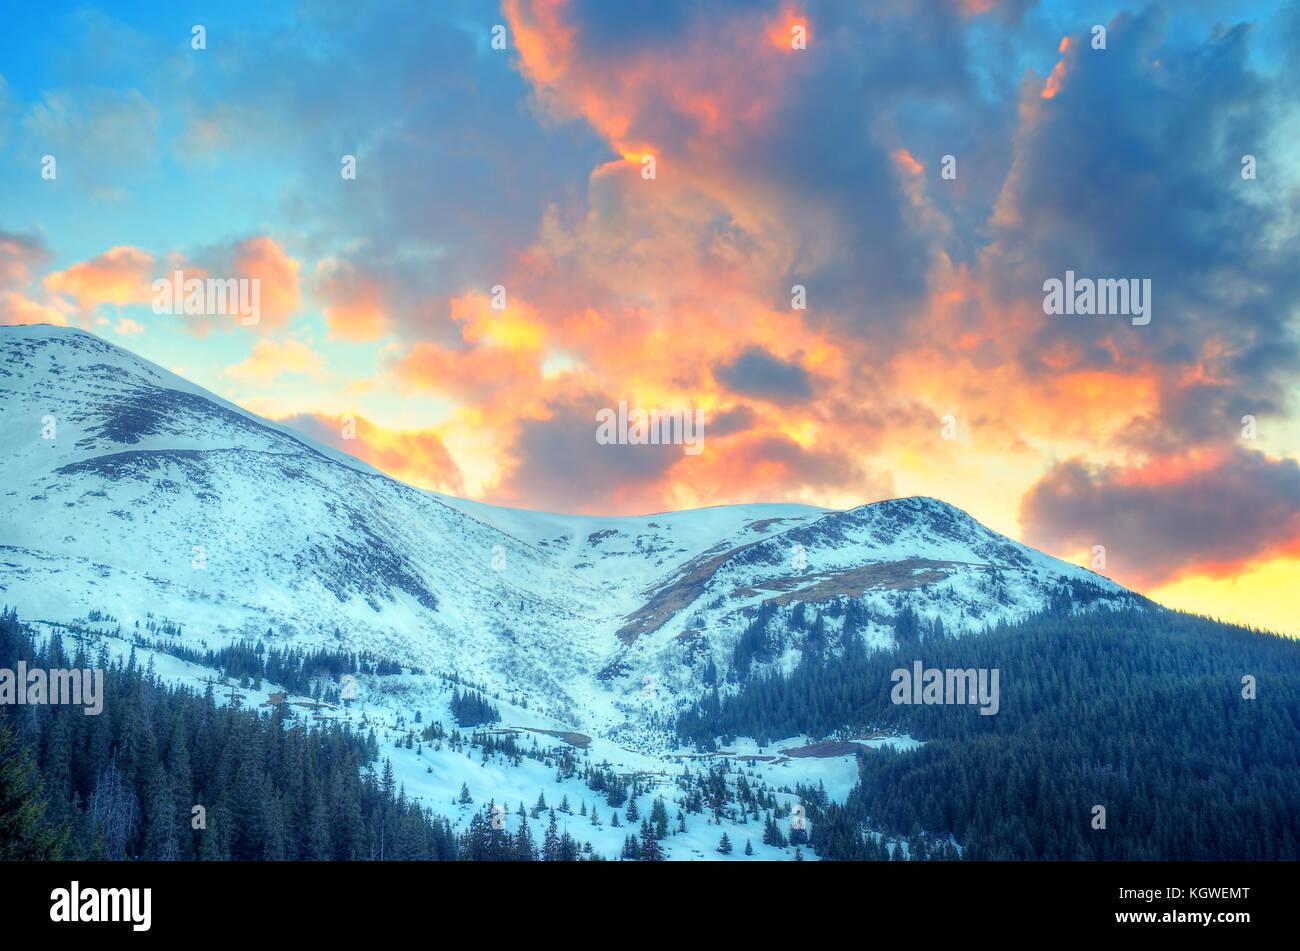 La Neve Paesaggio Di Montagna Con Colorati Majestic Nuvoloso Tramonto I Carpazi Ucraini La Cresta Di Chernogora Monte Petros Foto Stock Alamy